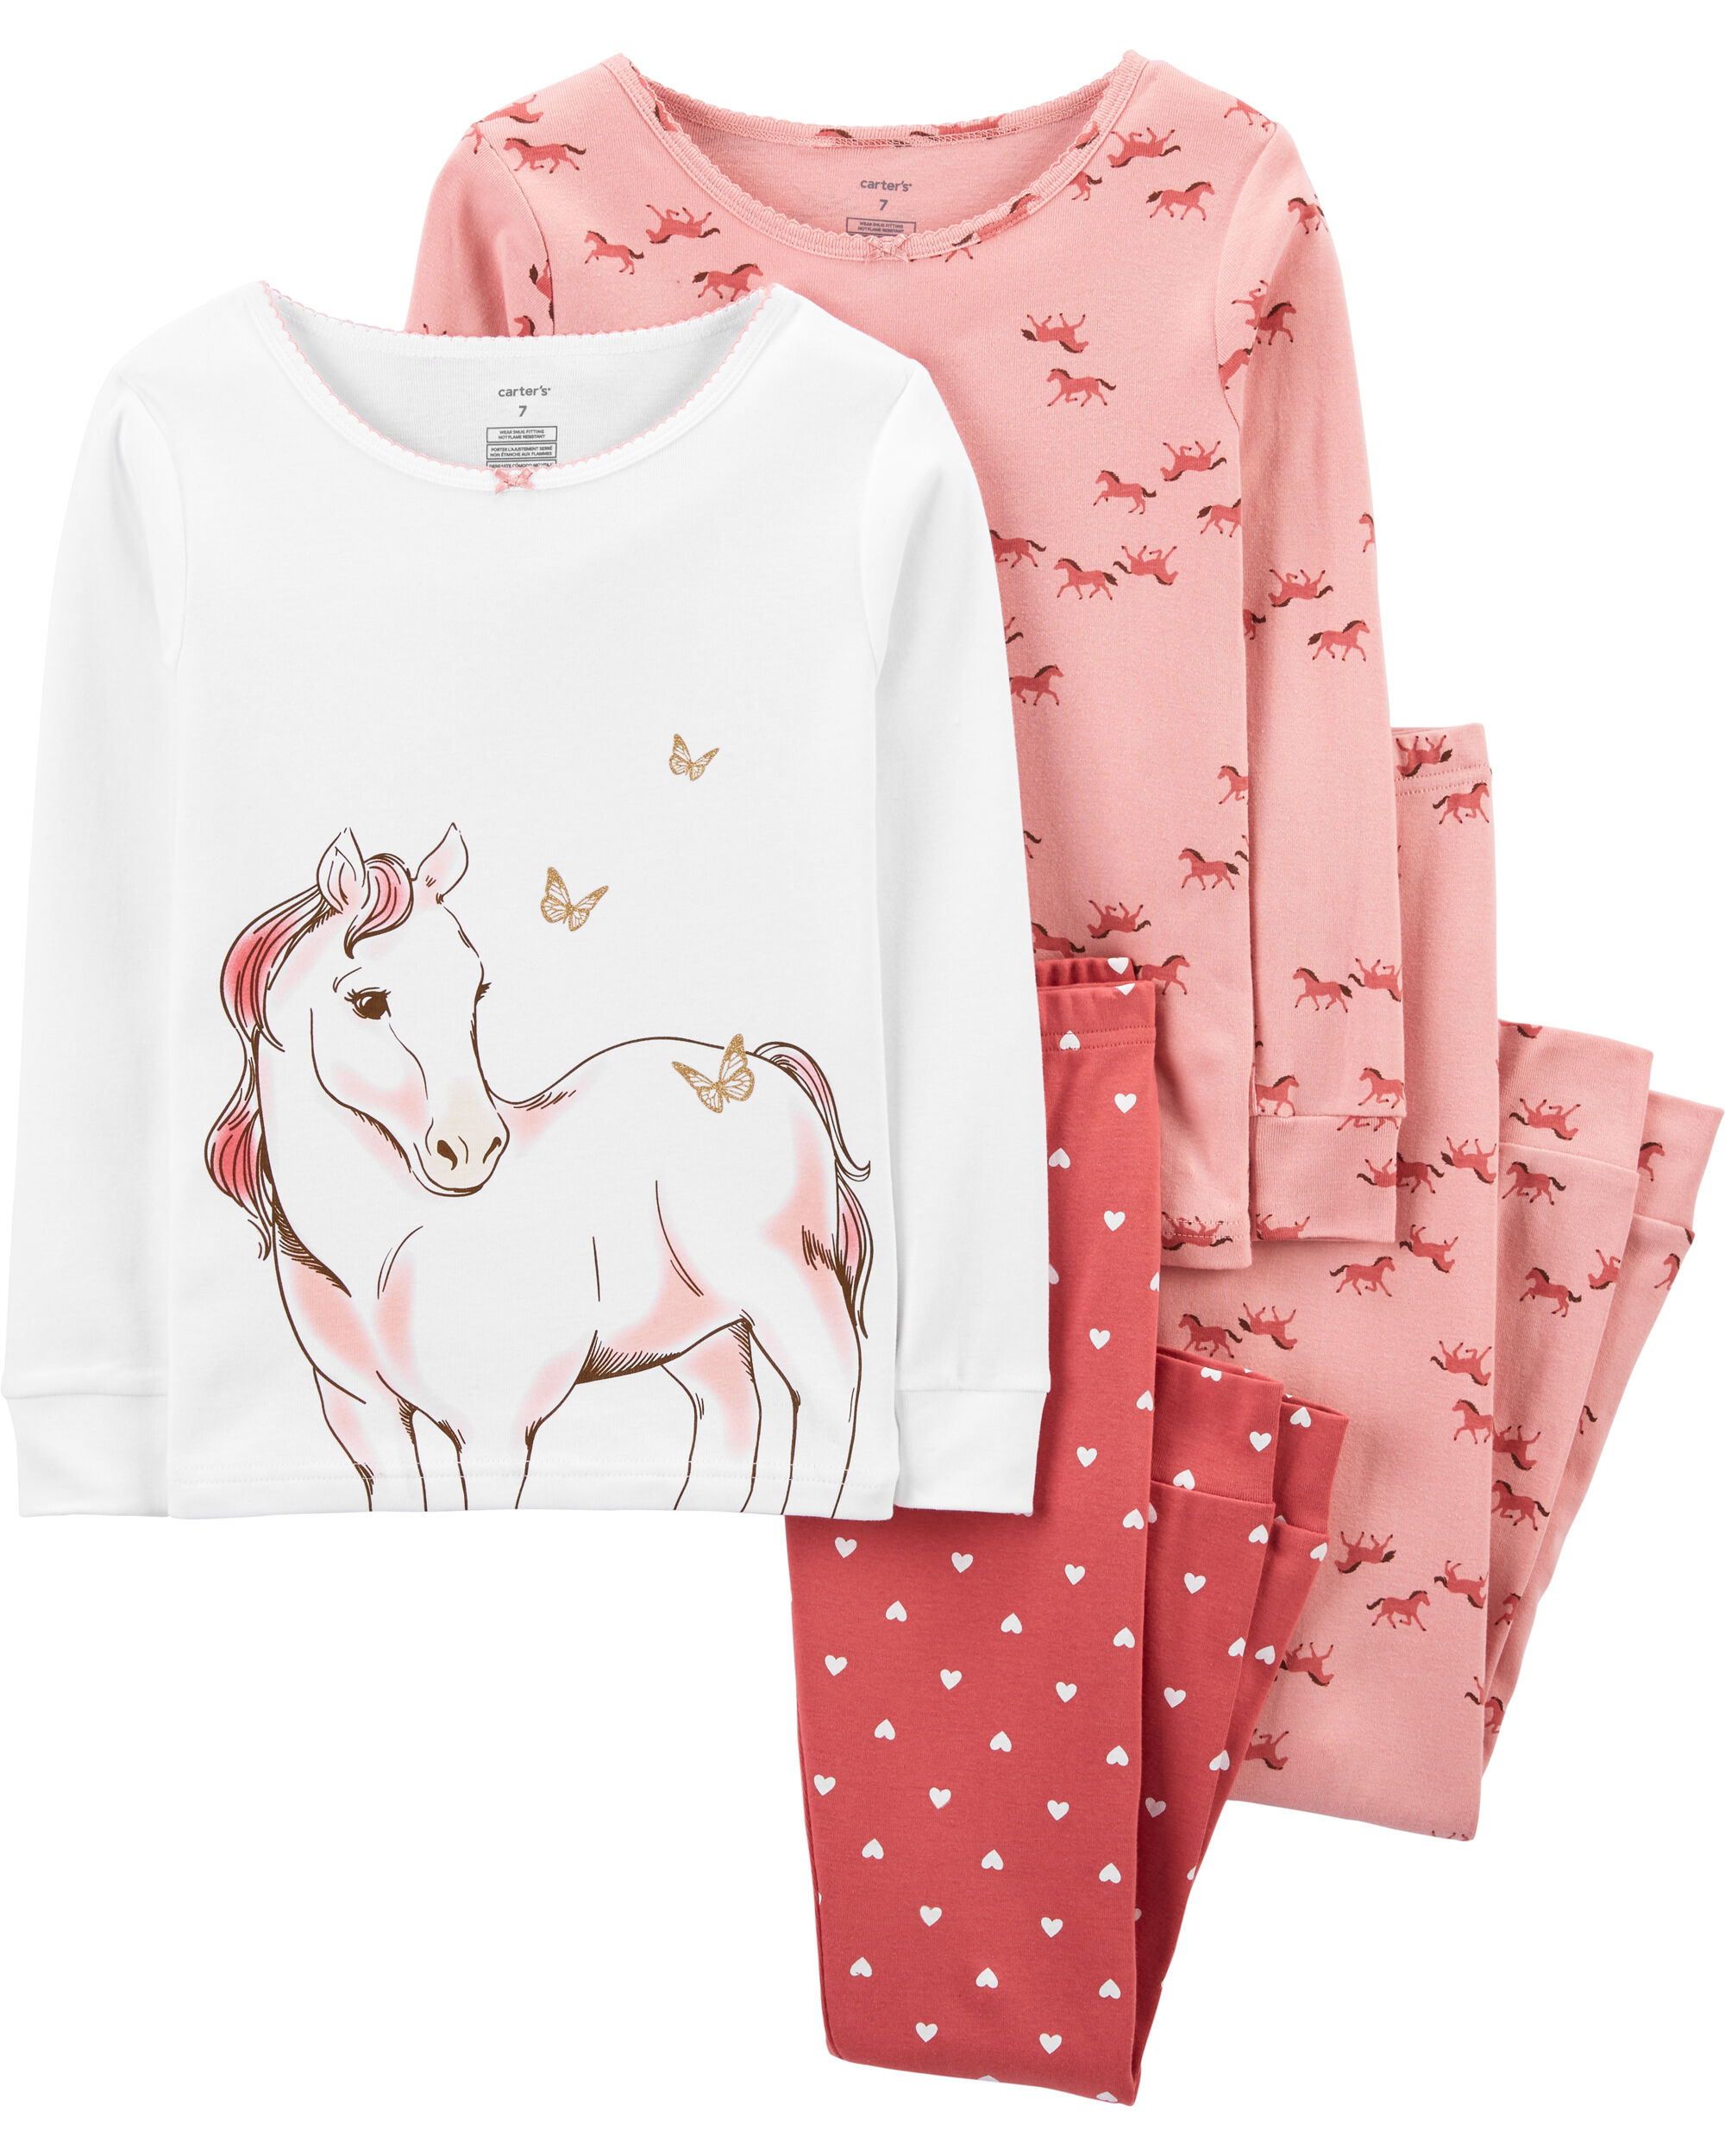 Little Girls Pajamas Baby Children Horse Pyjamas 100% Cotton Pink Toddler Sleepwear